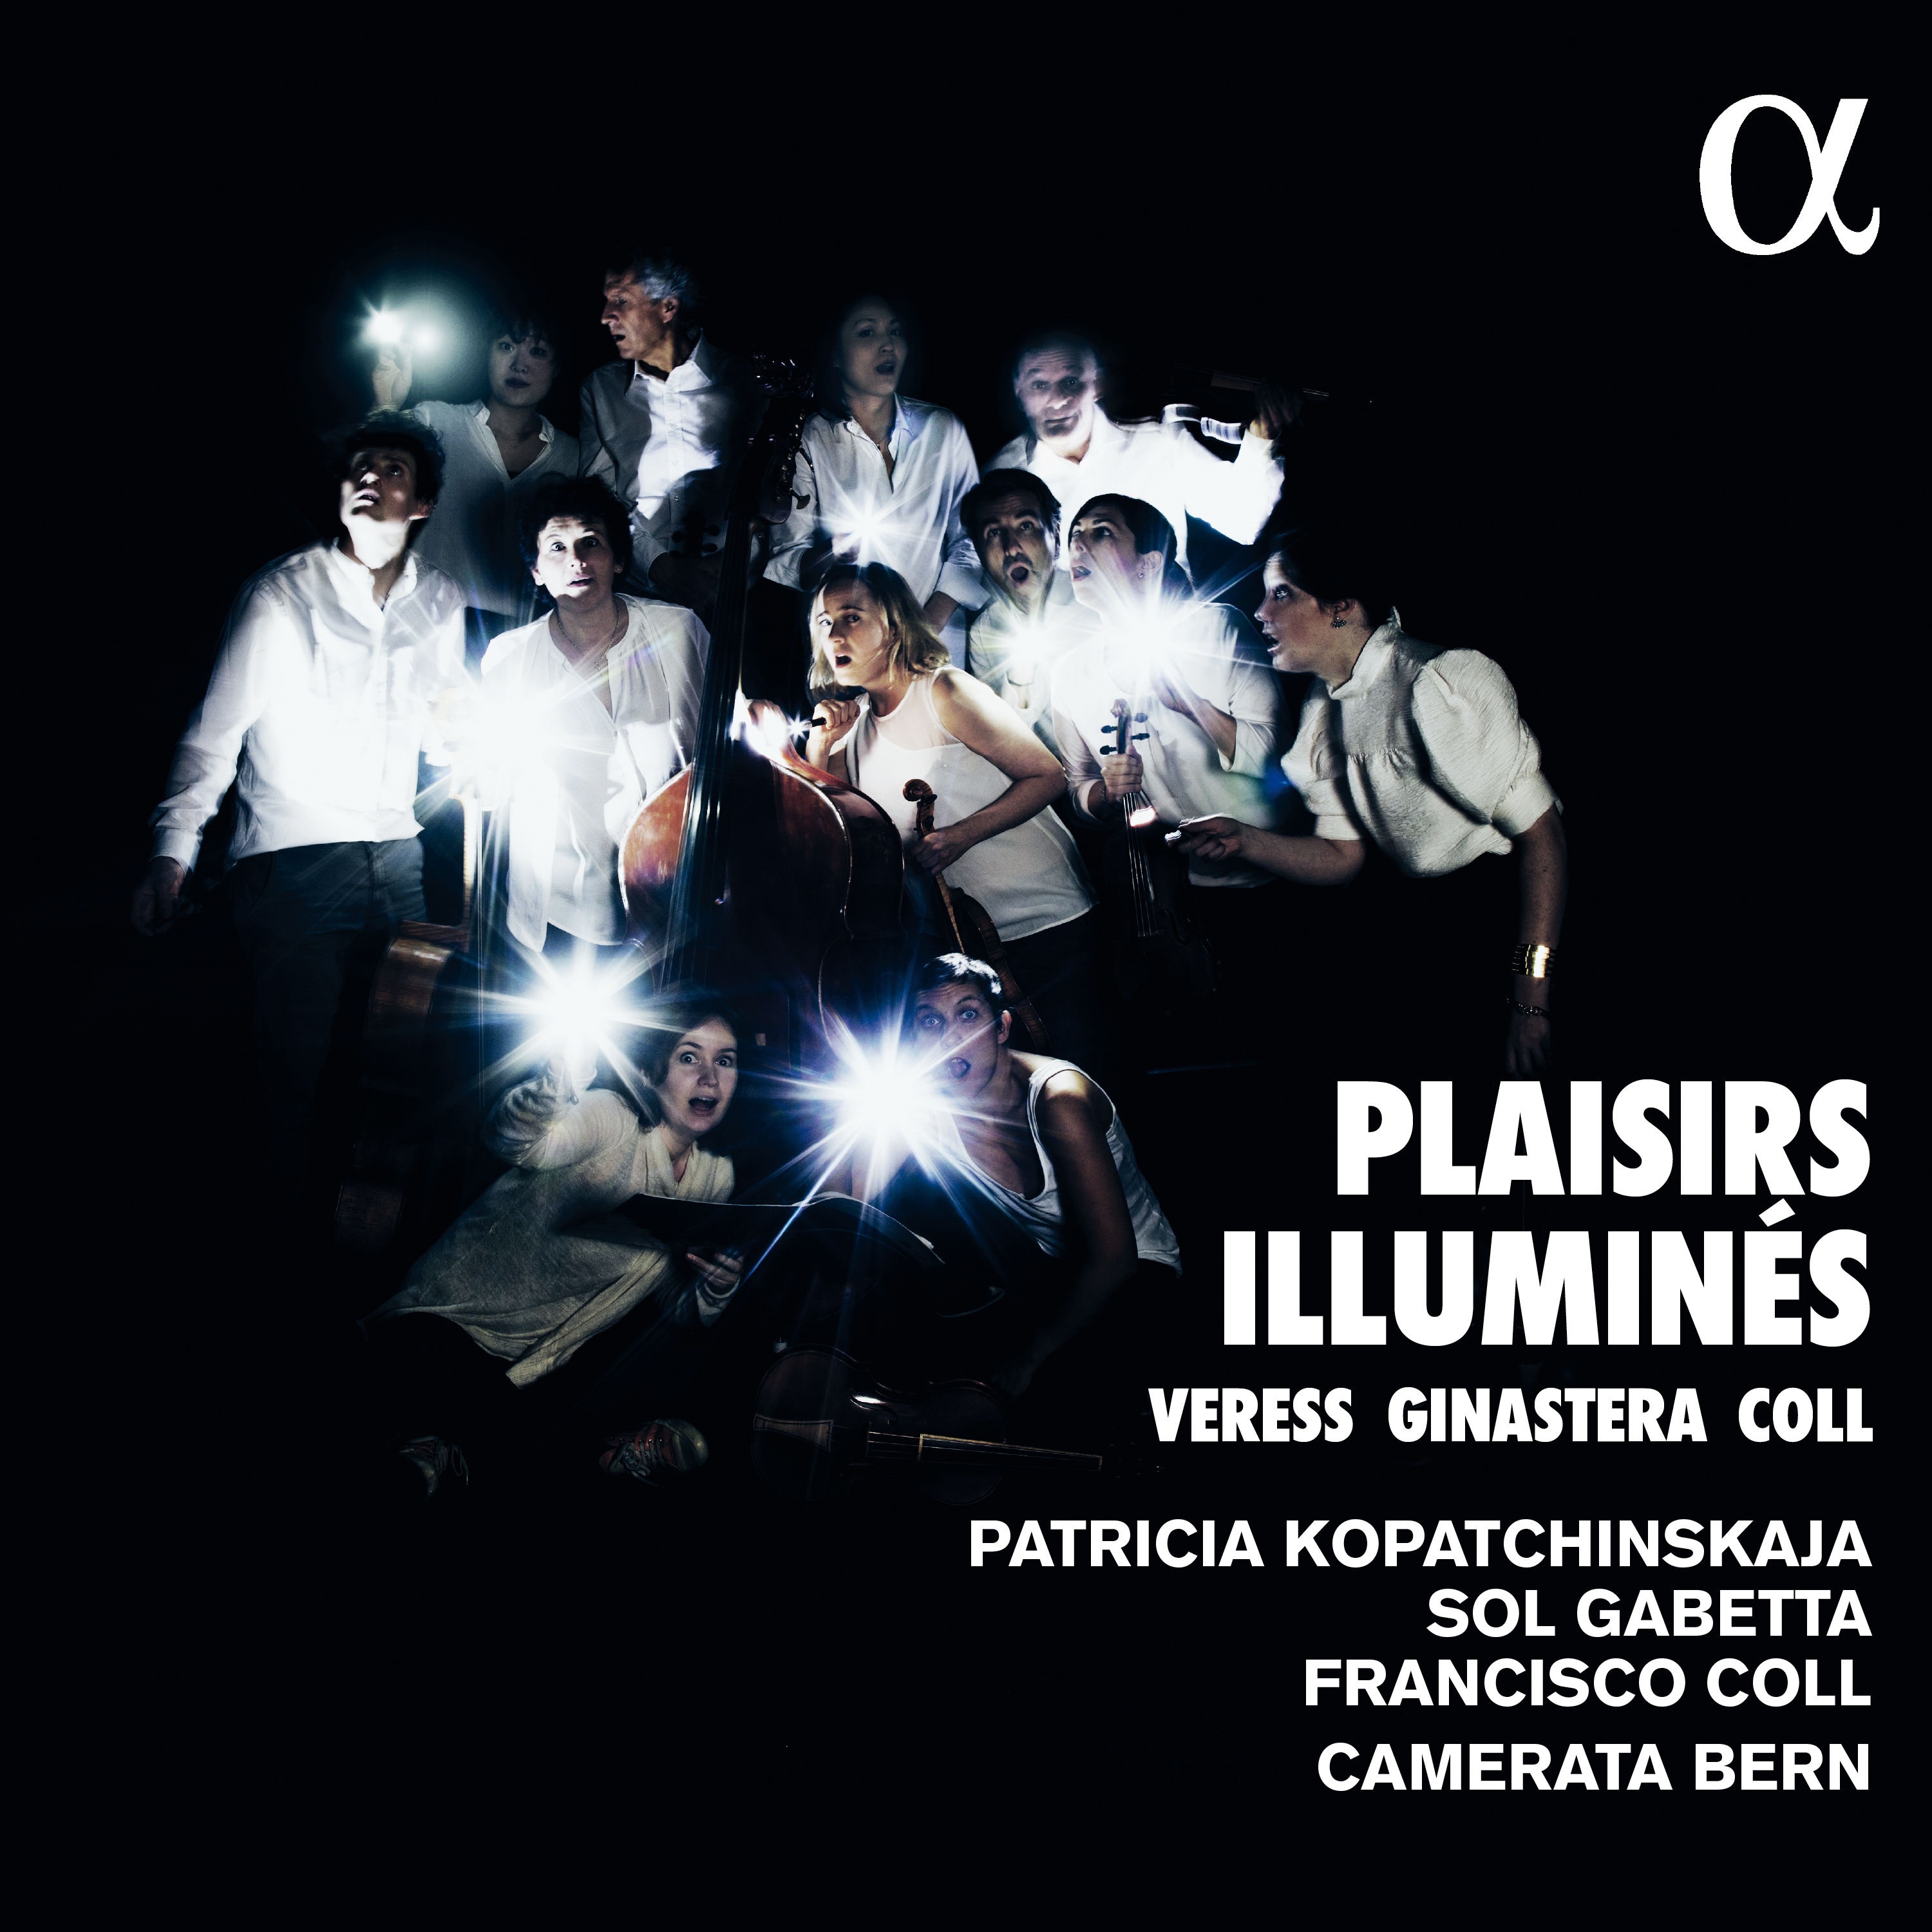 Patricia Kopatchinskaja, Sol Gabetta & Camerata Bern - Plaisirs illumines (2021) [FLAC 24bit/96kHz]